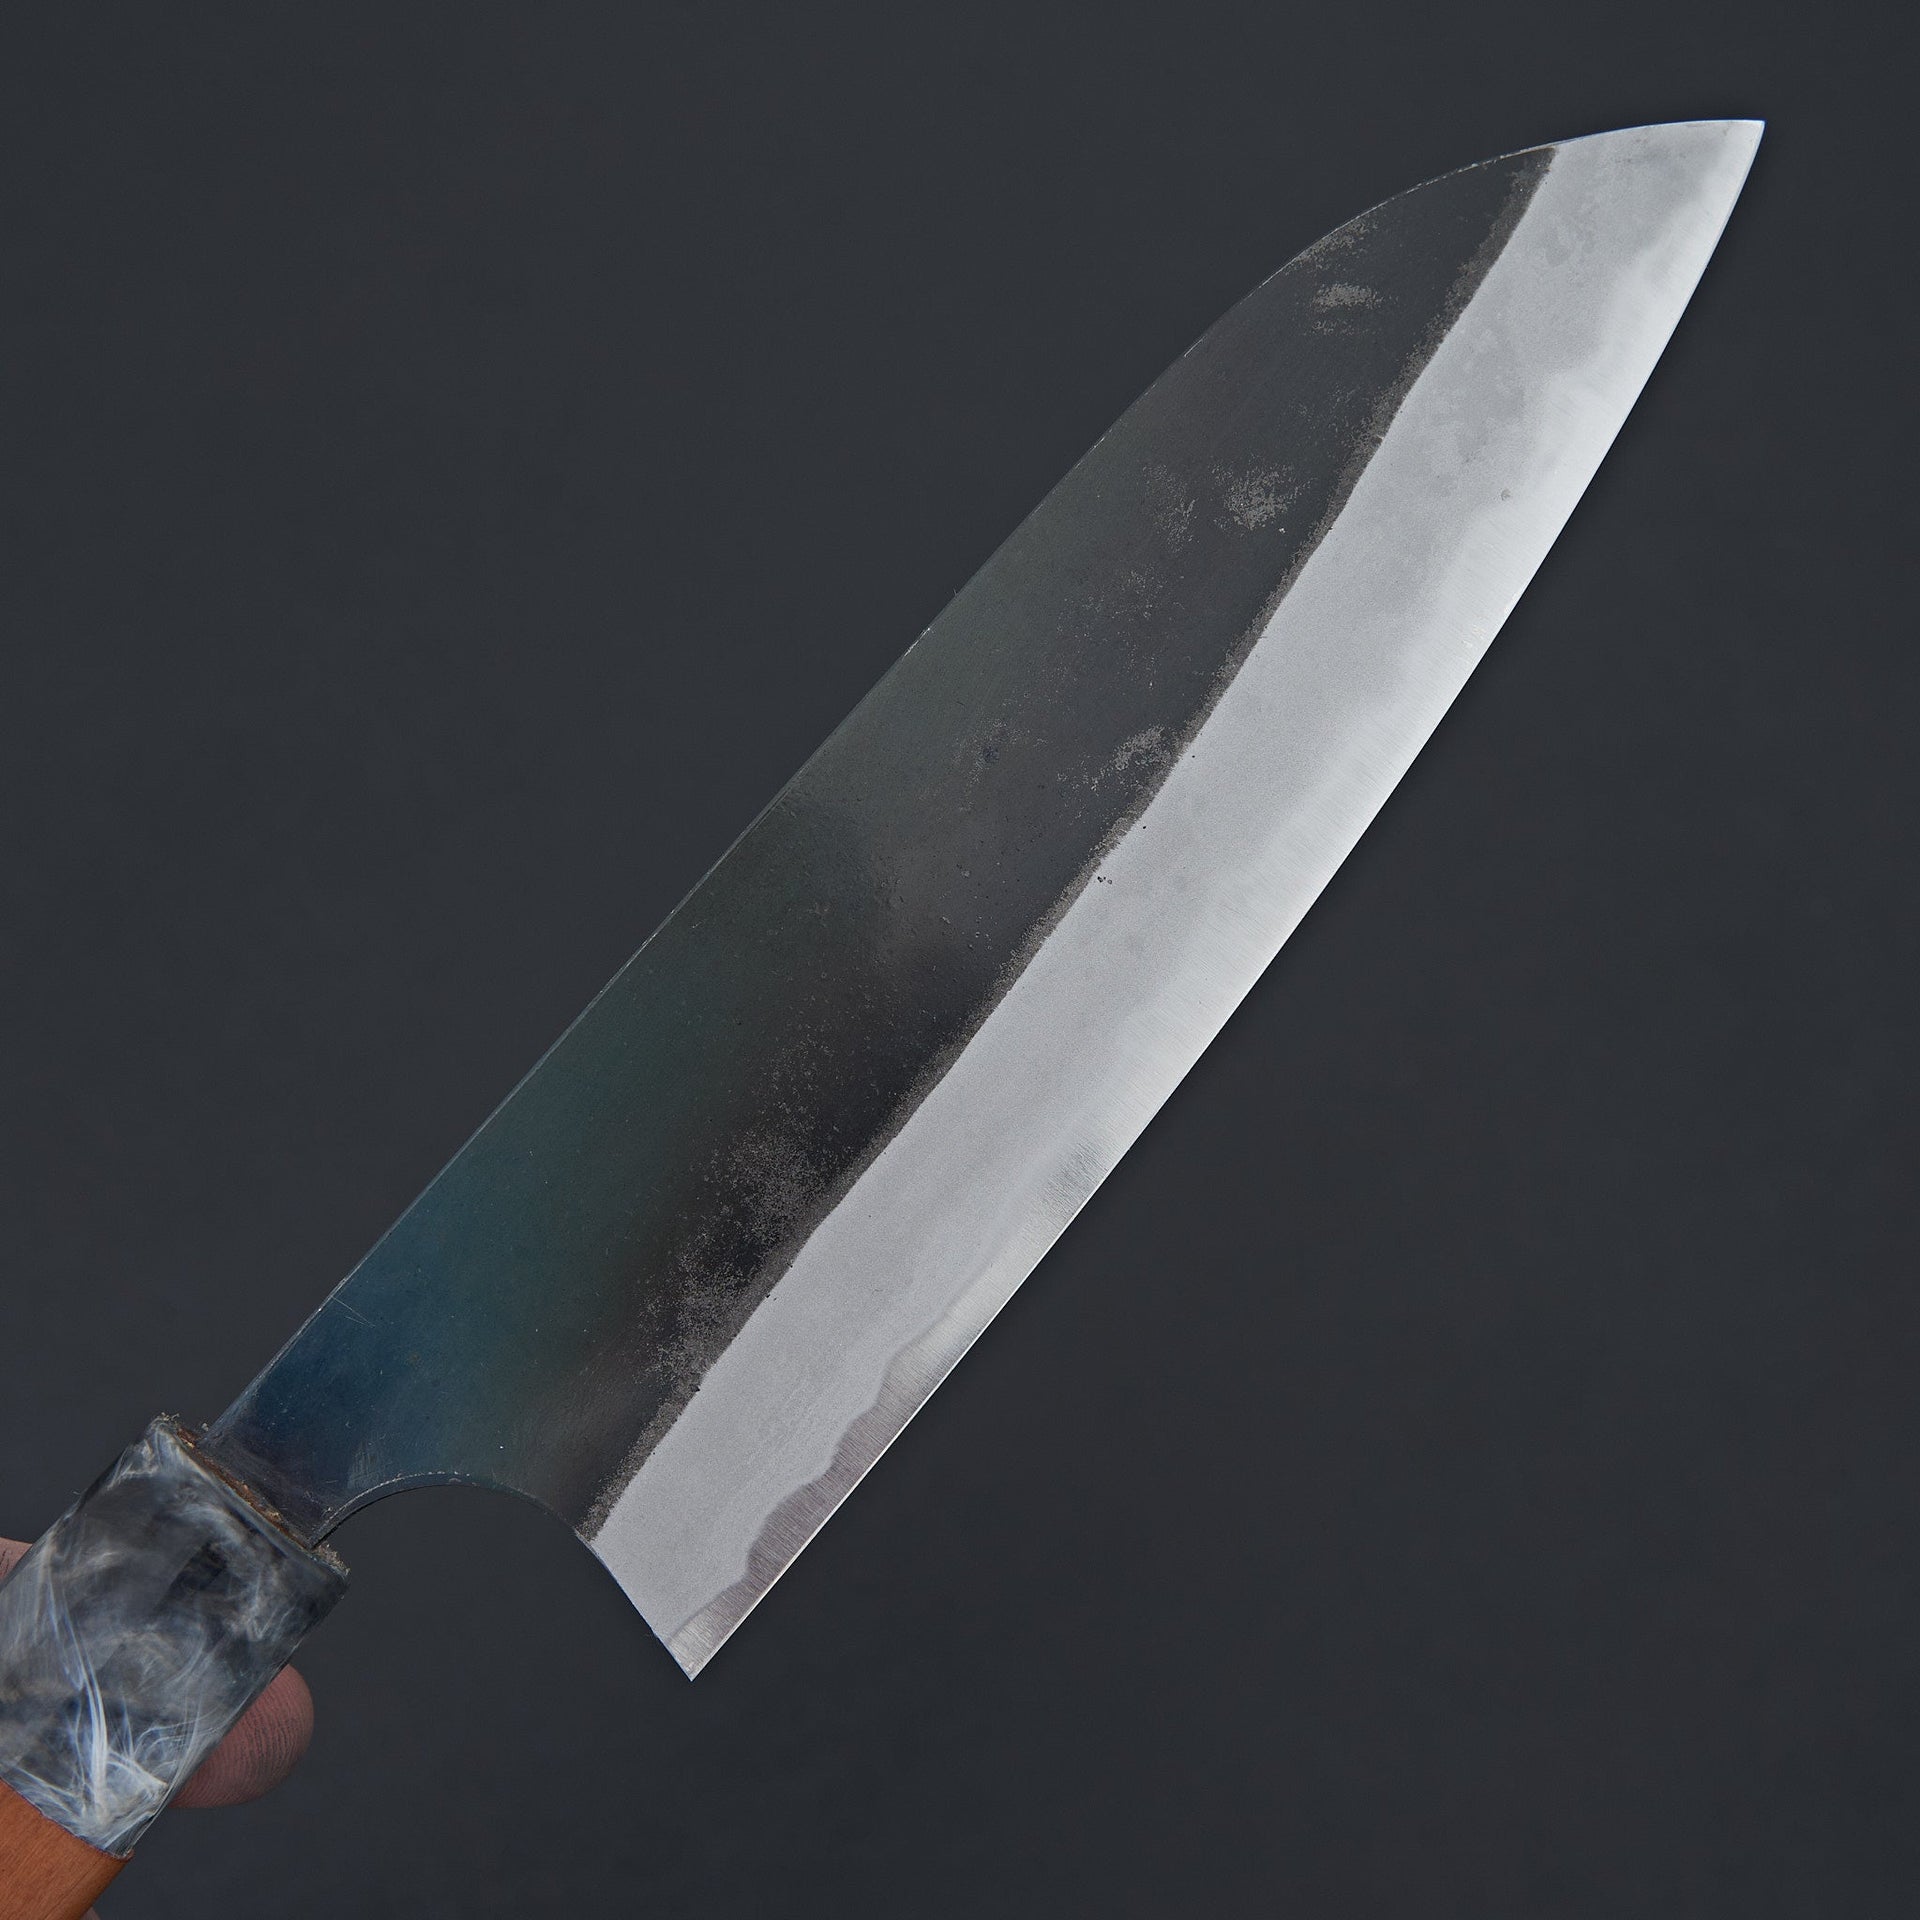 Masakage Mizu Santoku 165mm-Knife-Masakage-Carbon Knife Co